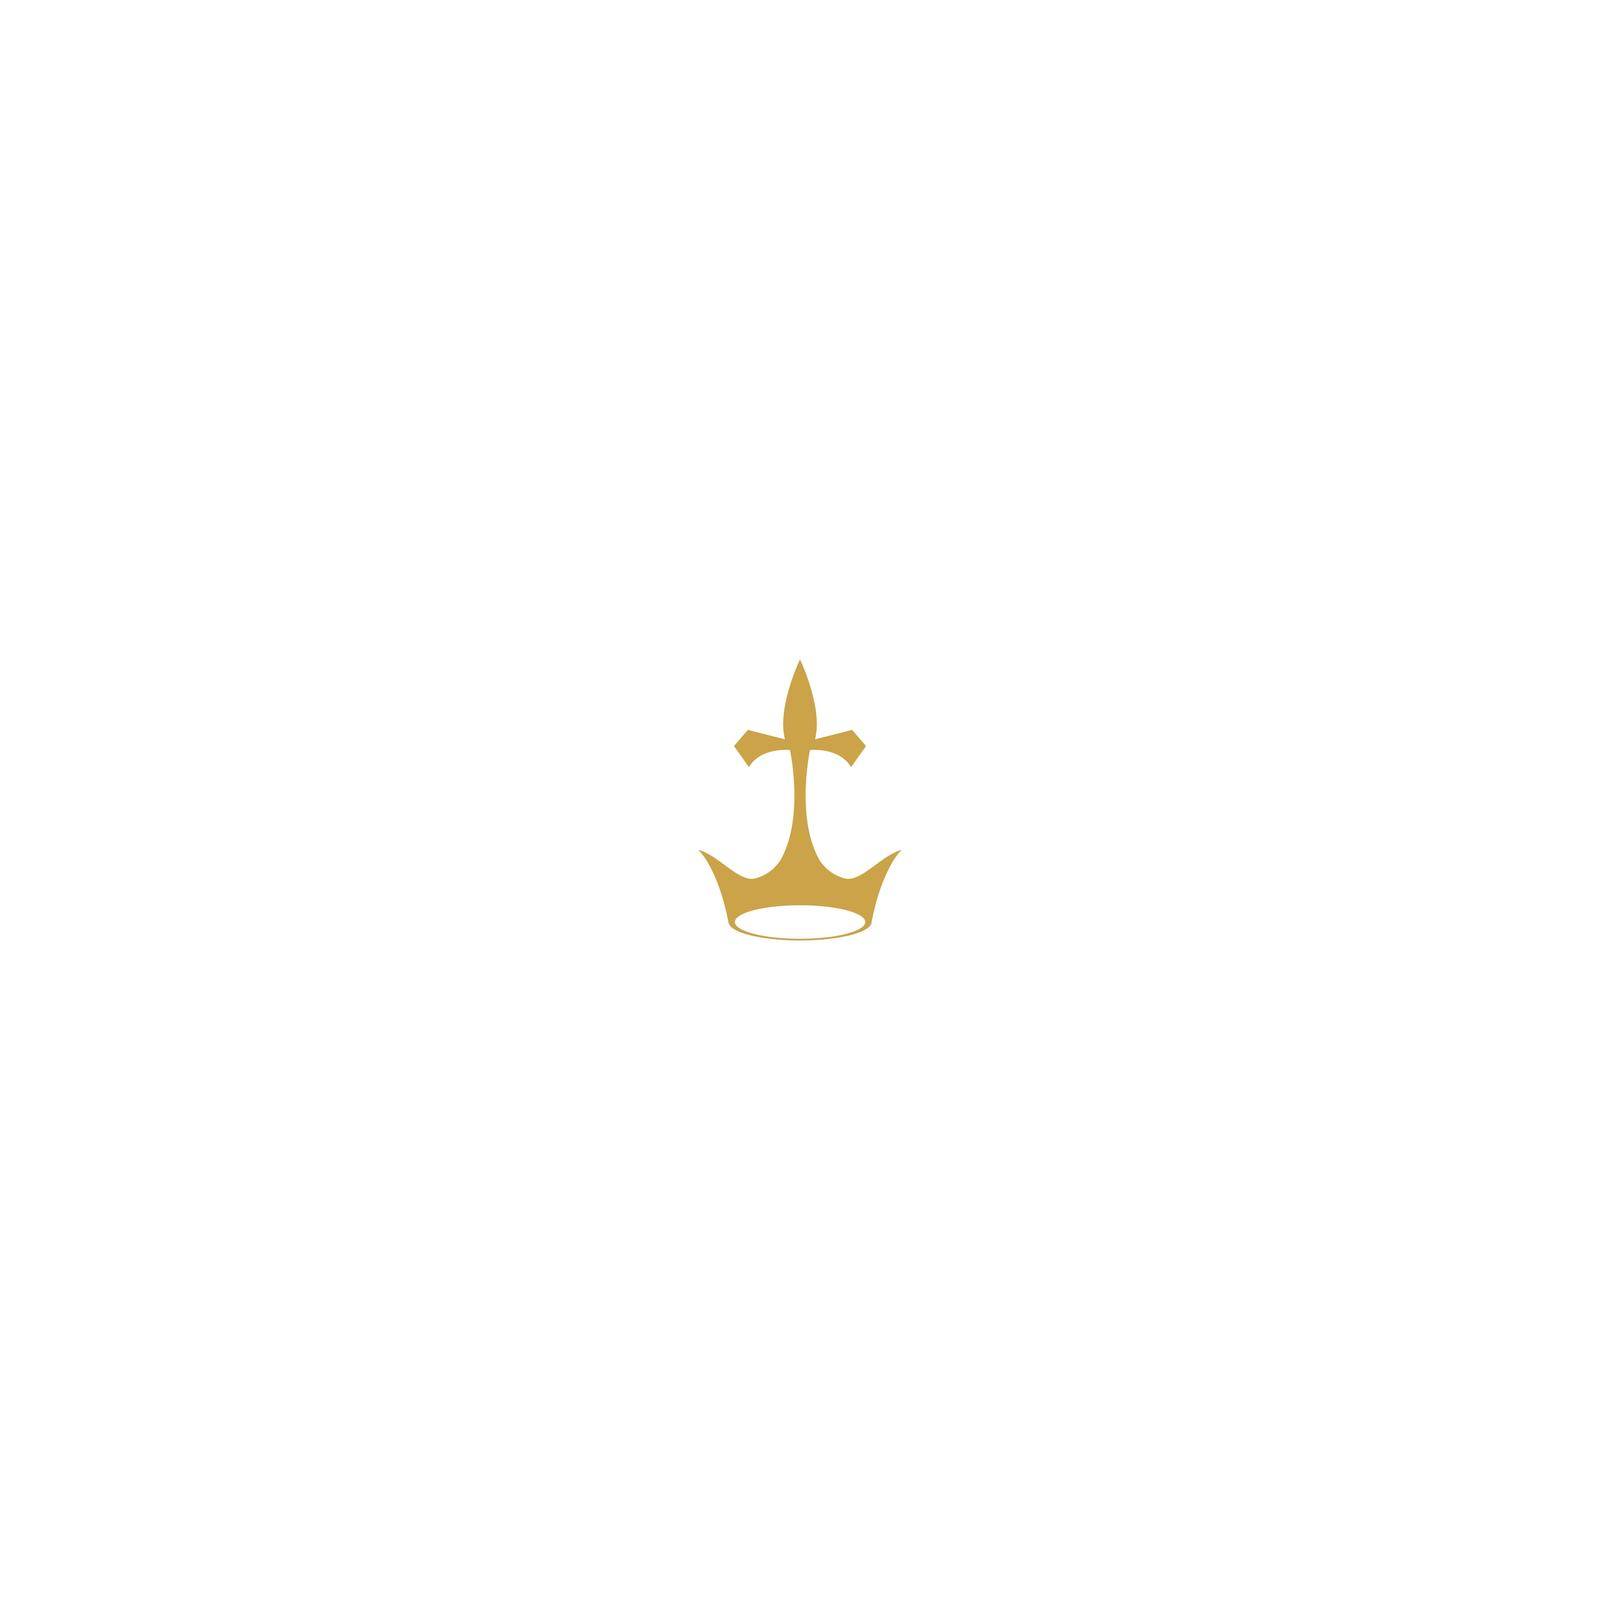 Crown Concept Logo icon Design Template